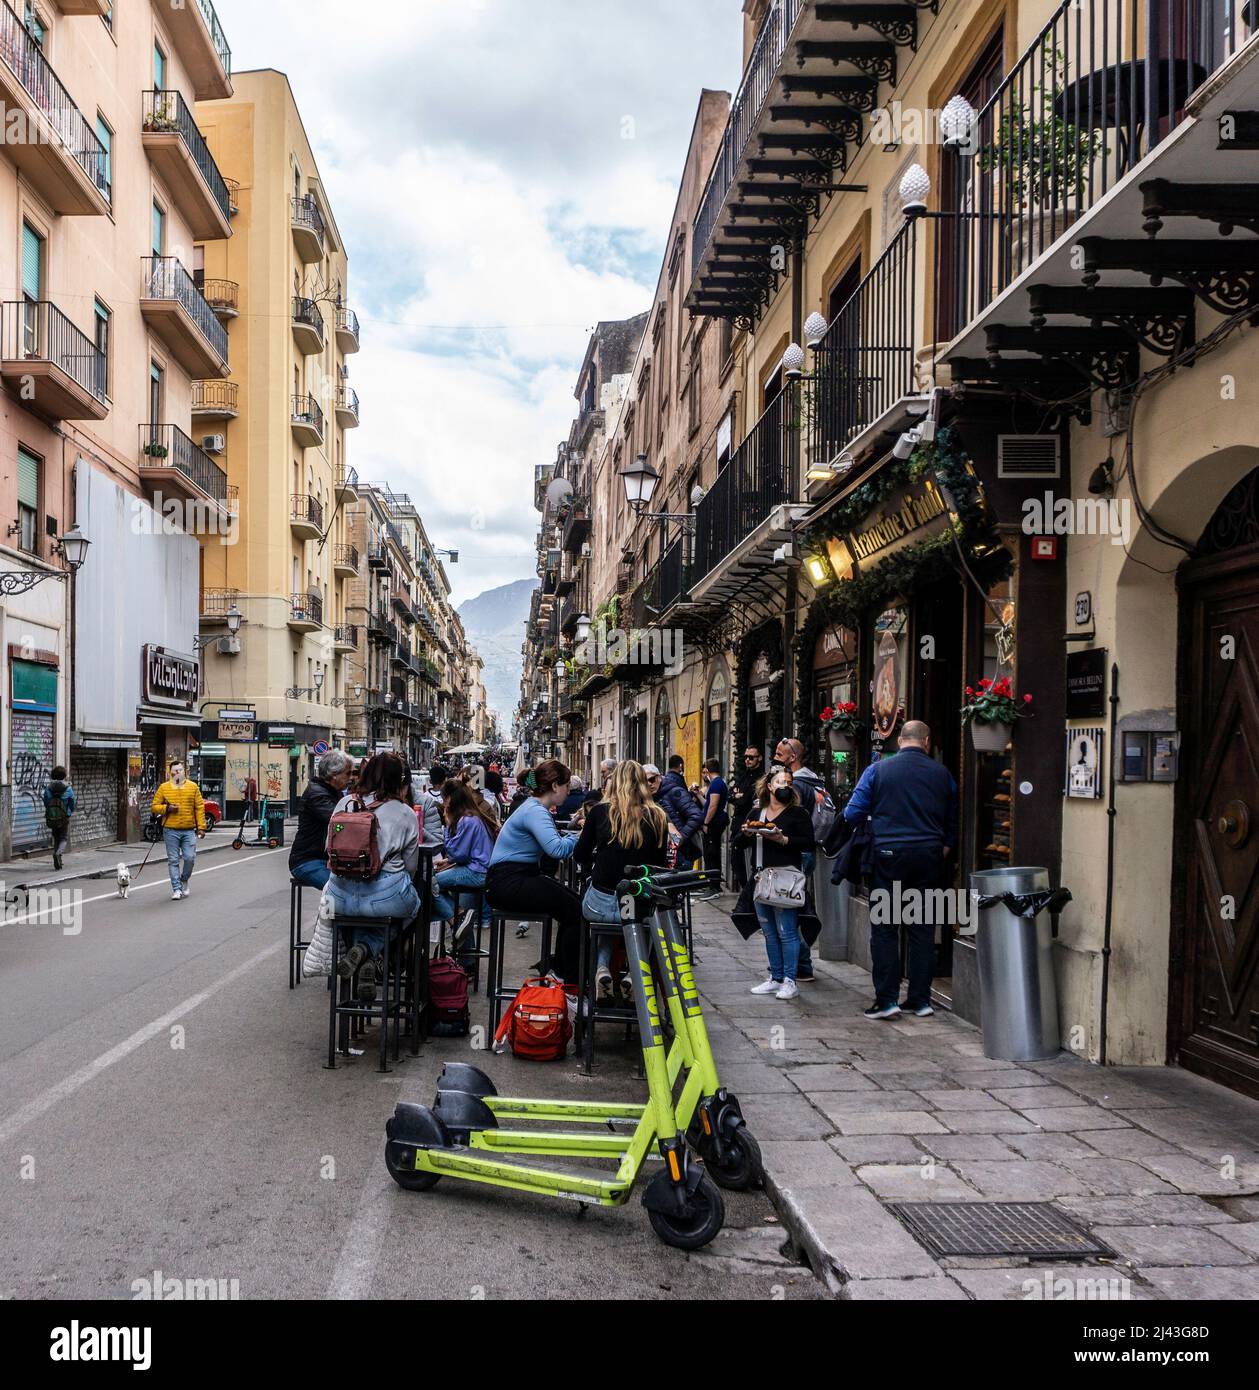 Comidas al aire libre a lo largo de Via Maqueda, Palermo, Sicilia, Italia. Una calle peatonal y una calle muy popular para comer y comprar al aire libre. Foto de stock